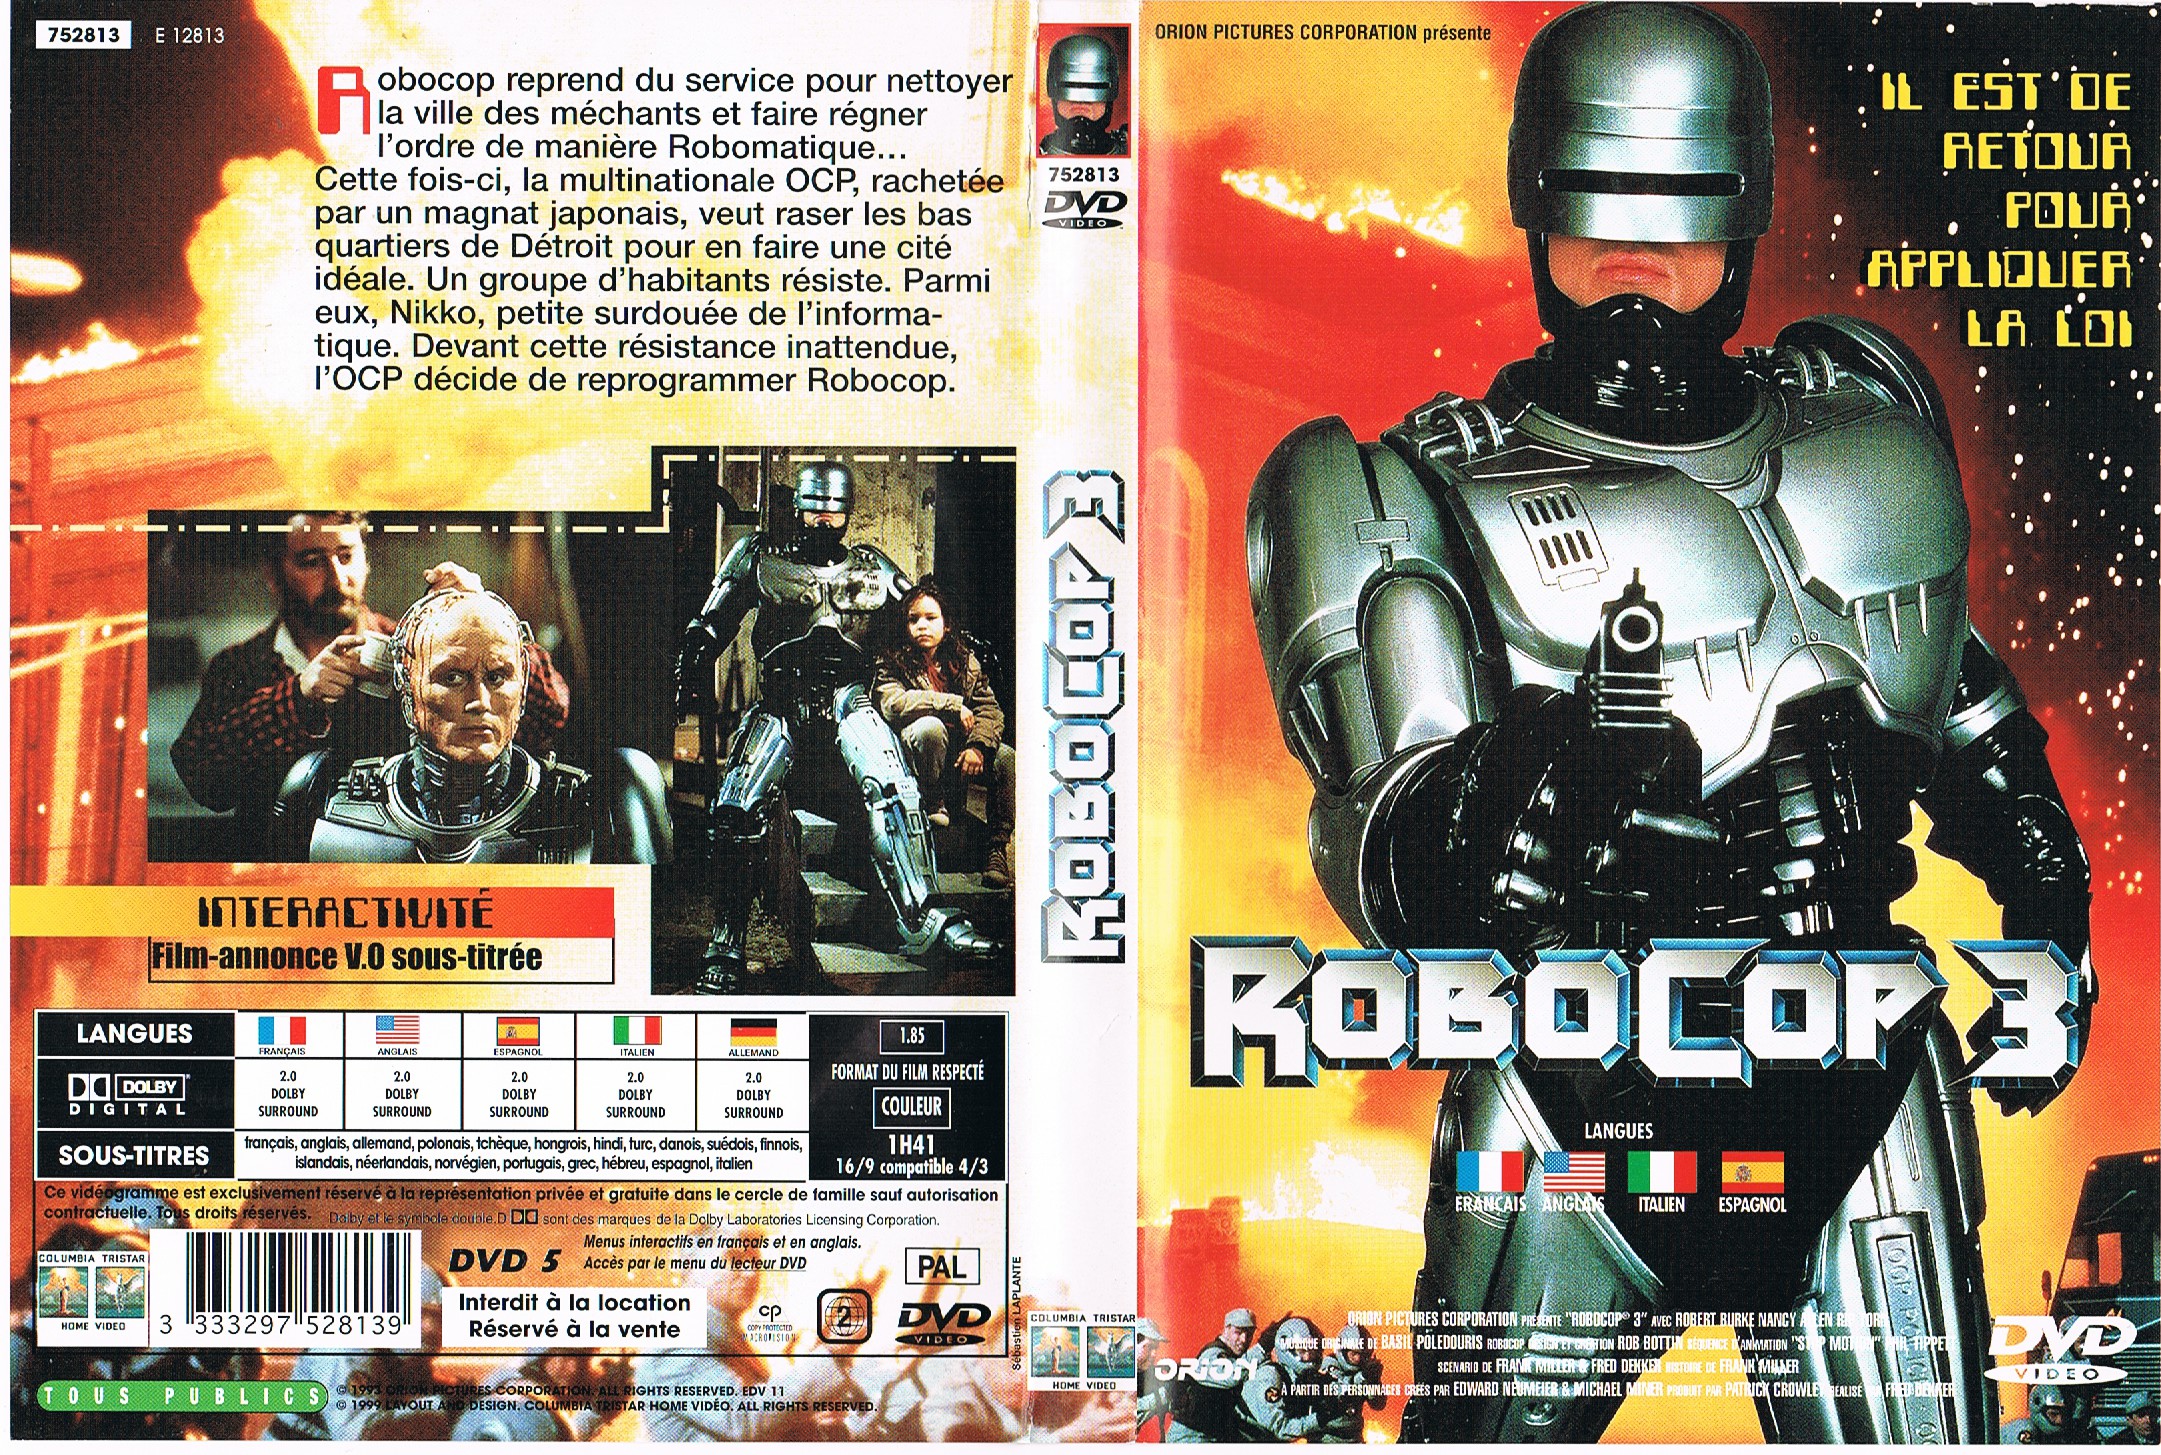 Jaquette DVD Robocop 3 v4